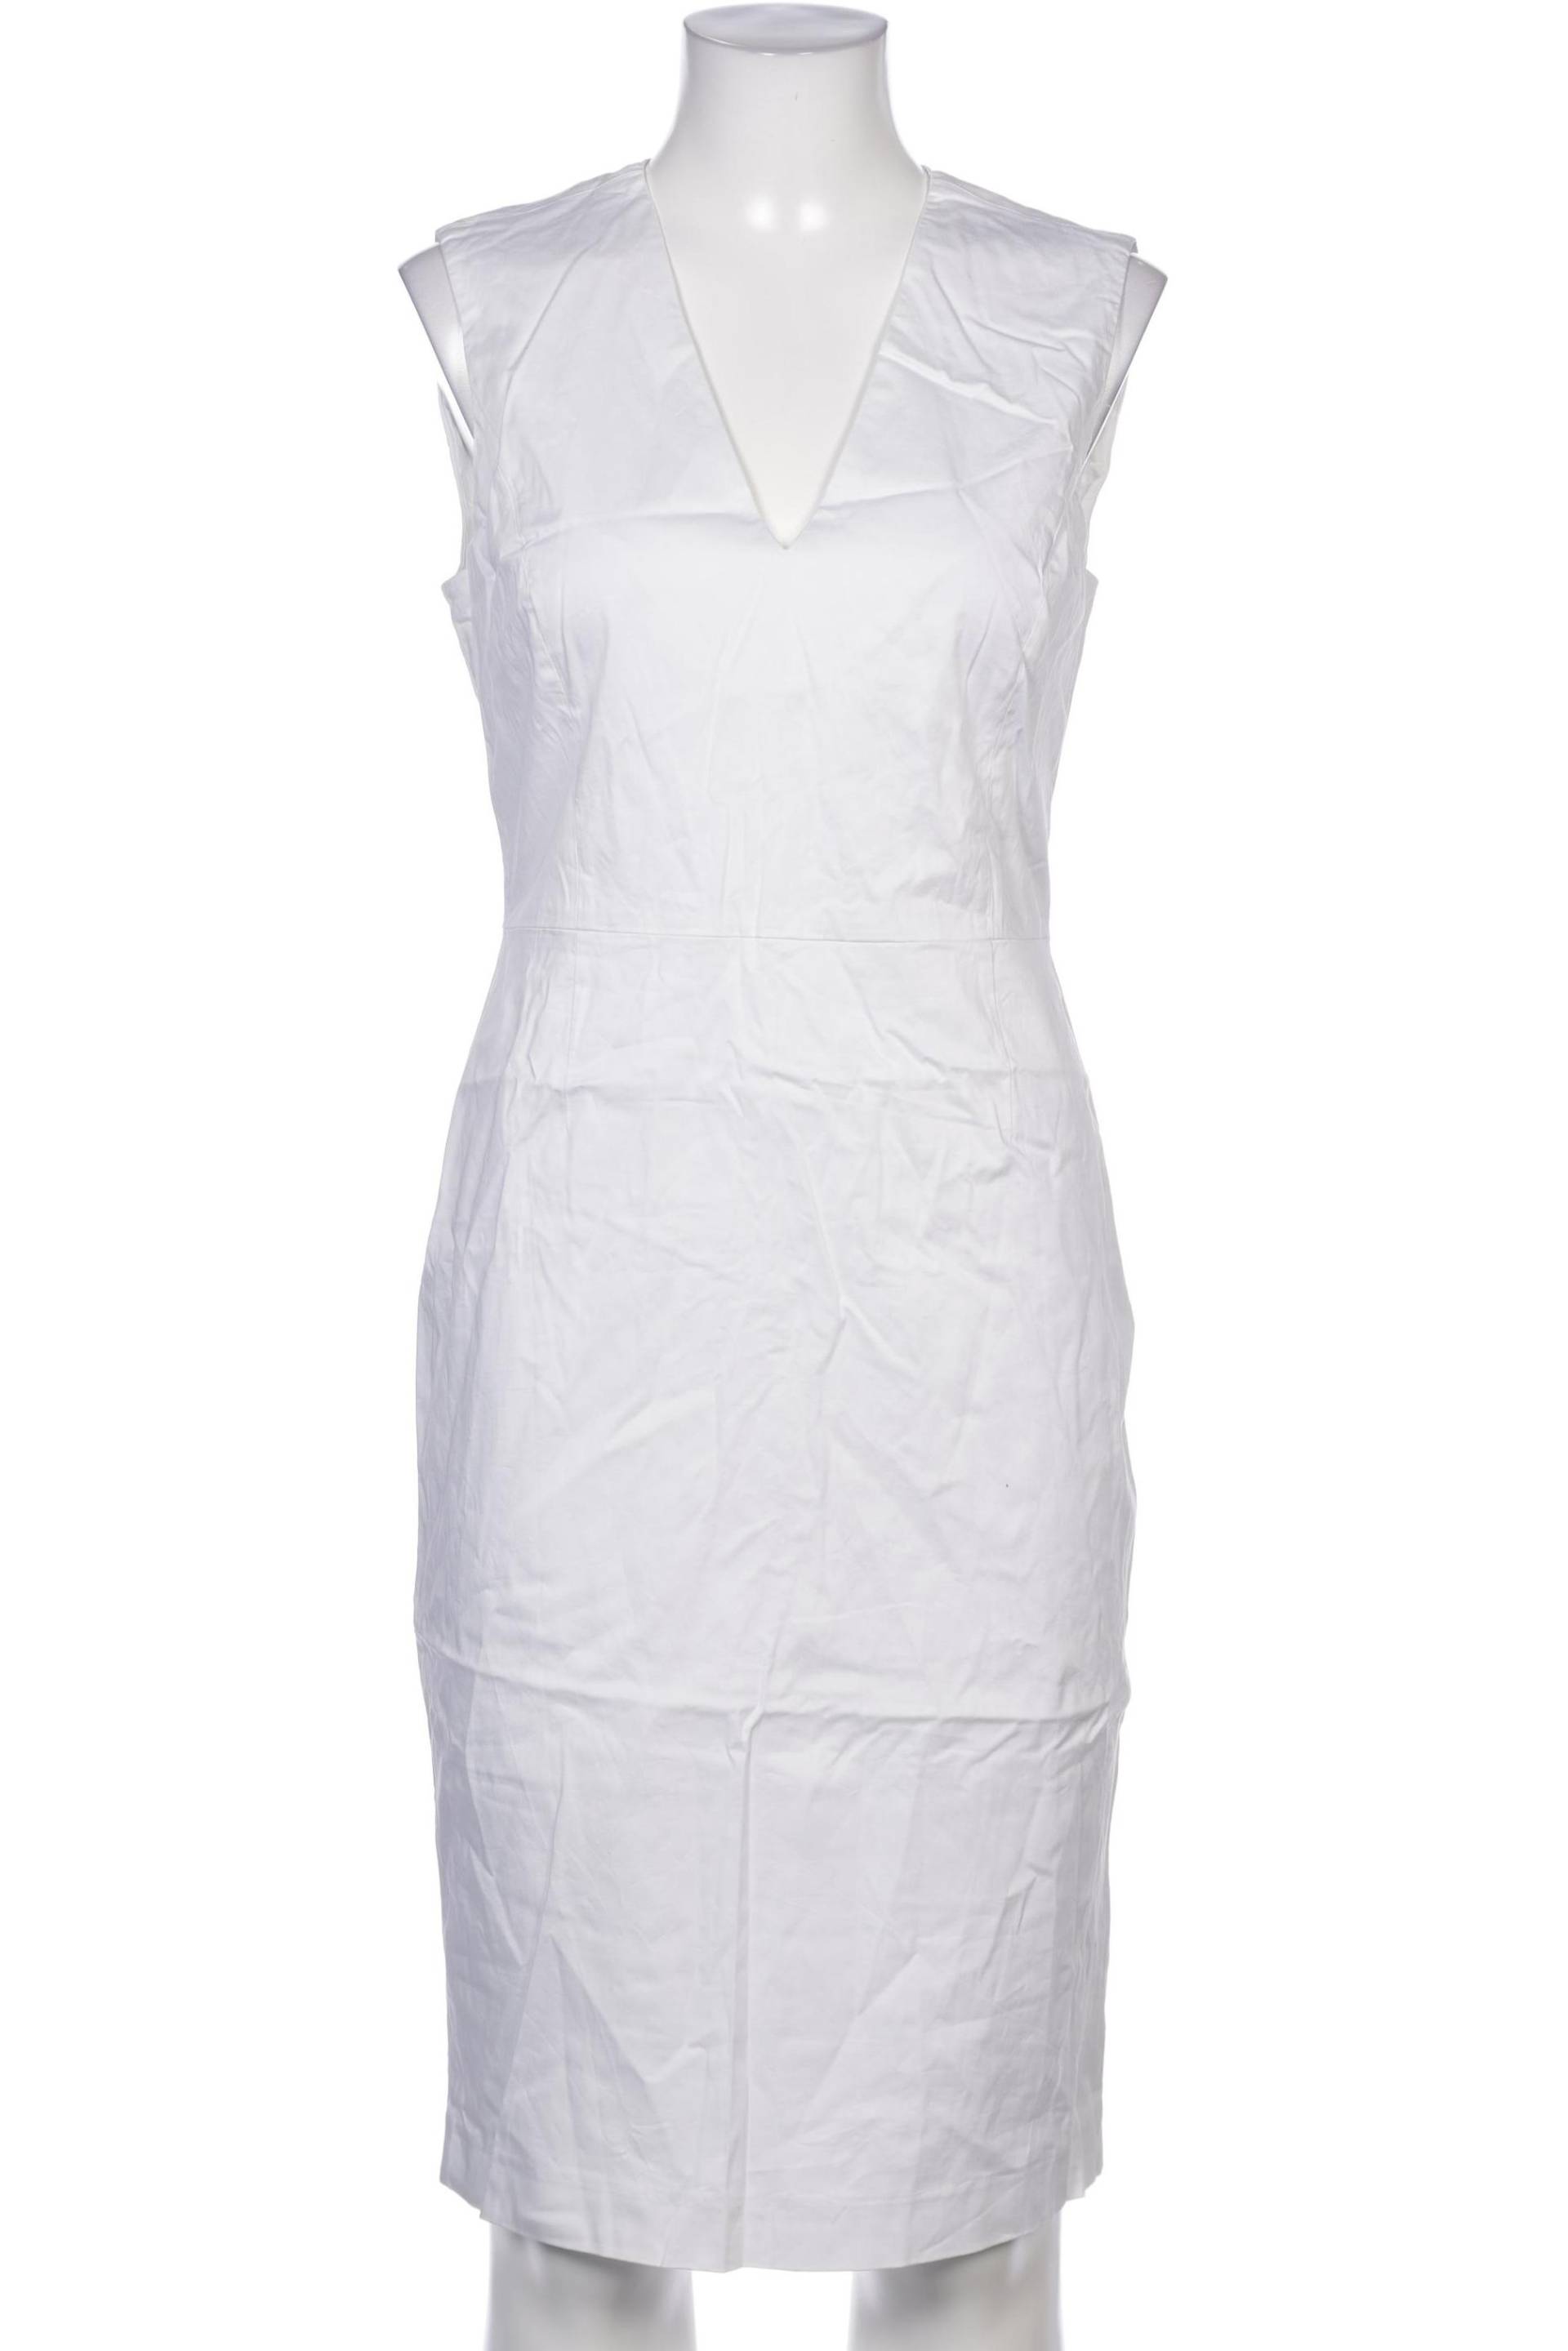 Stefanel Damen Kleid, weiß, Gr. 36 von Stefanel